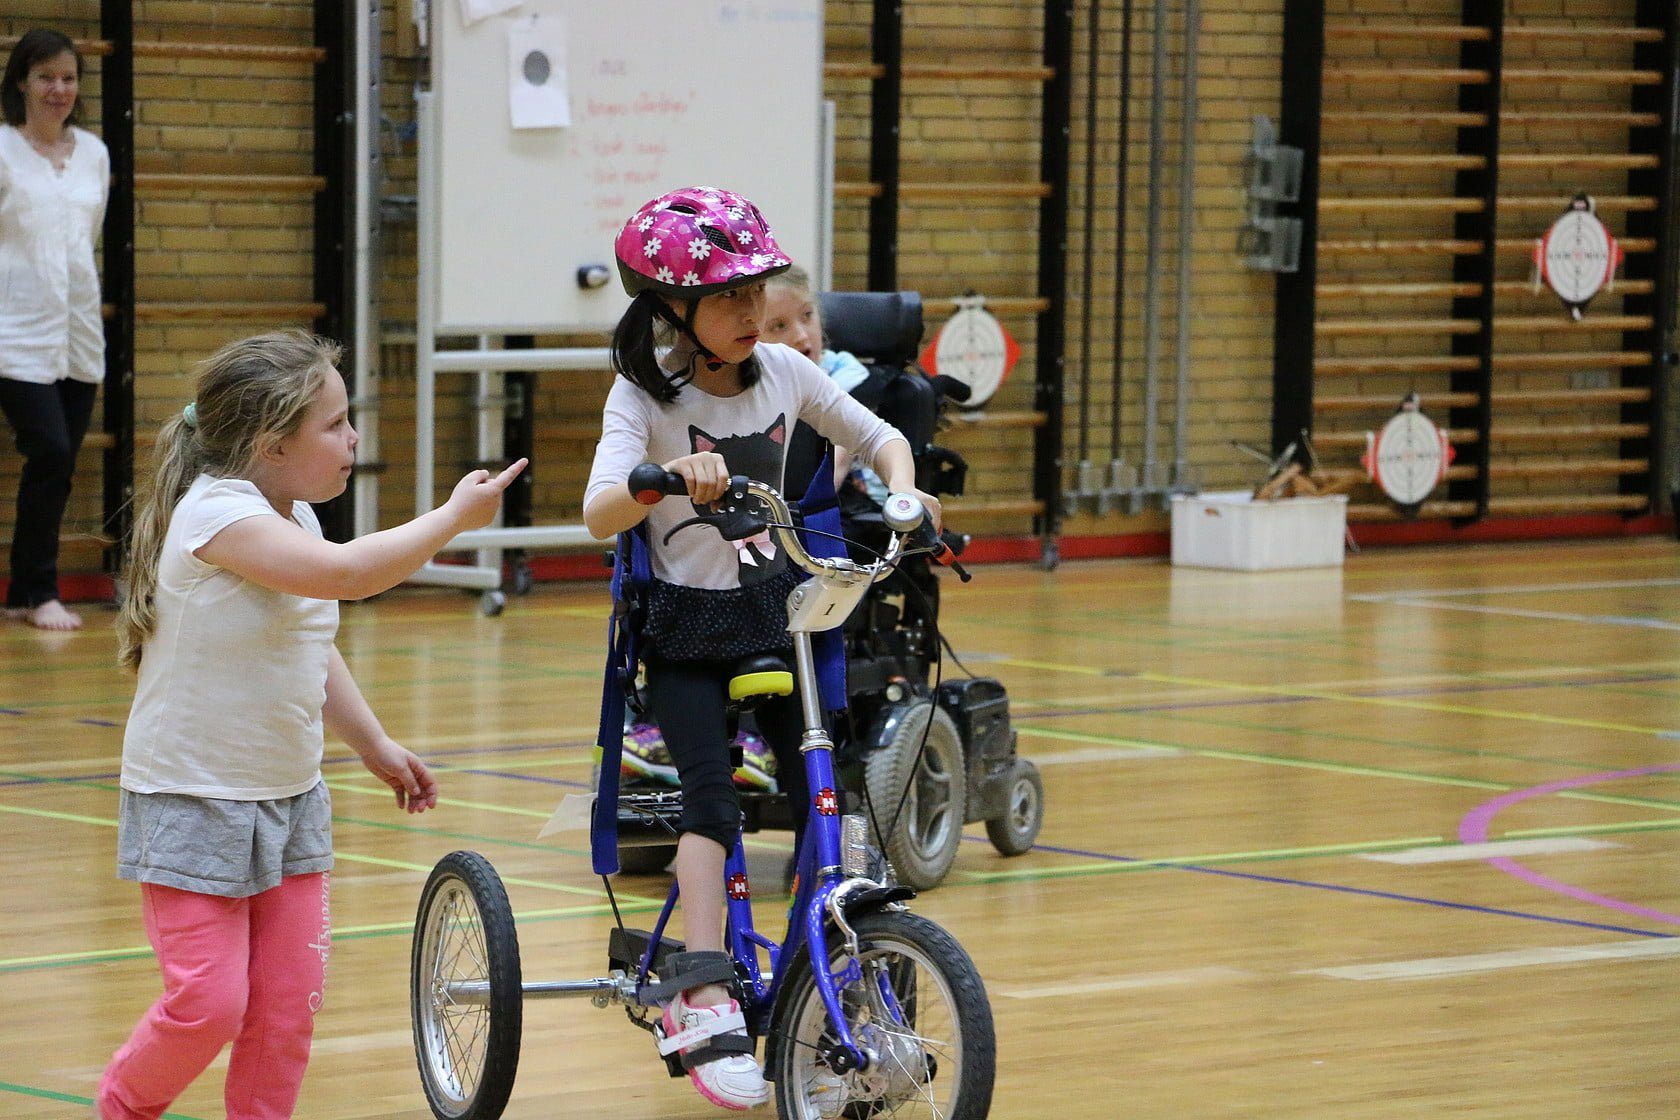 Tre piger i gymnastiksal. Pigen til venstre går rundt. Pigen til højre kører på trehjulet cykel. Pigen i baggrunden kører i el-kørestol.